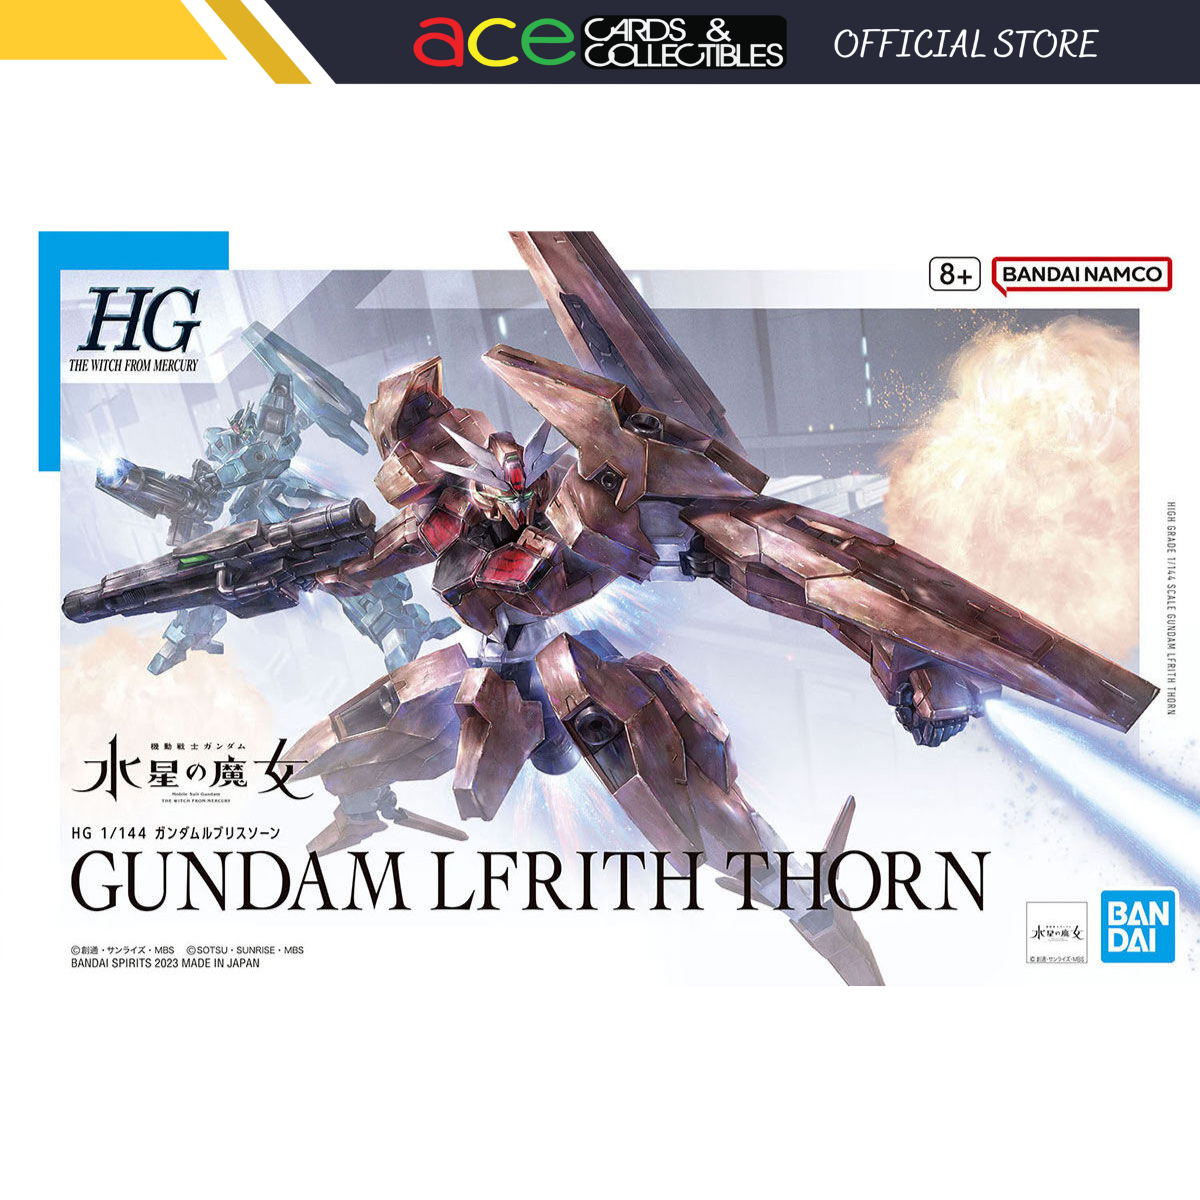 Gunpla HG 1/144 "Lfirth Thorn"-Bandai-Ace Cards & Collectibles